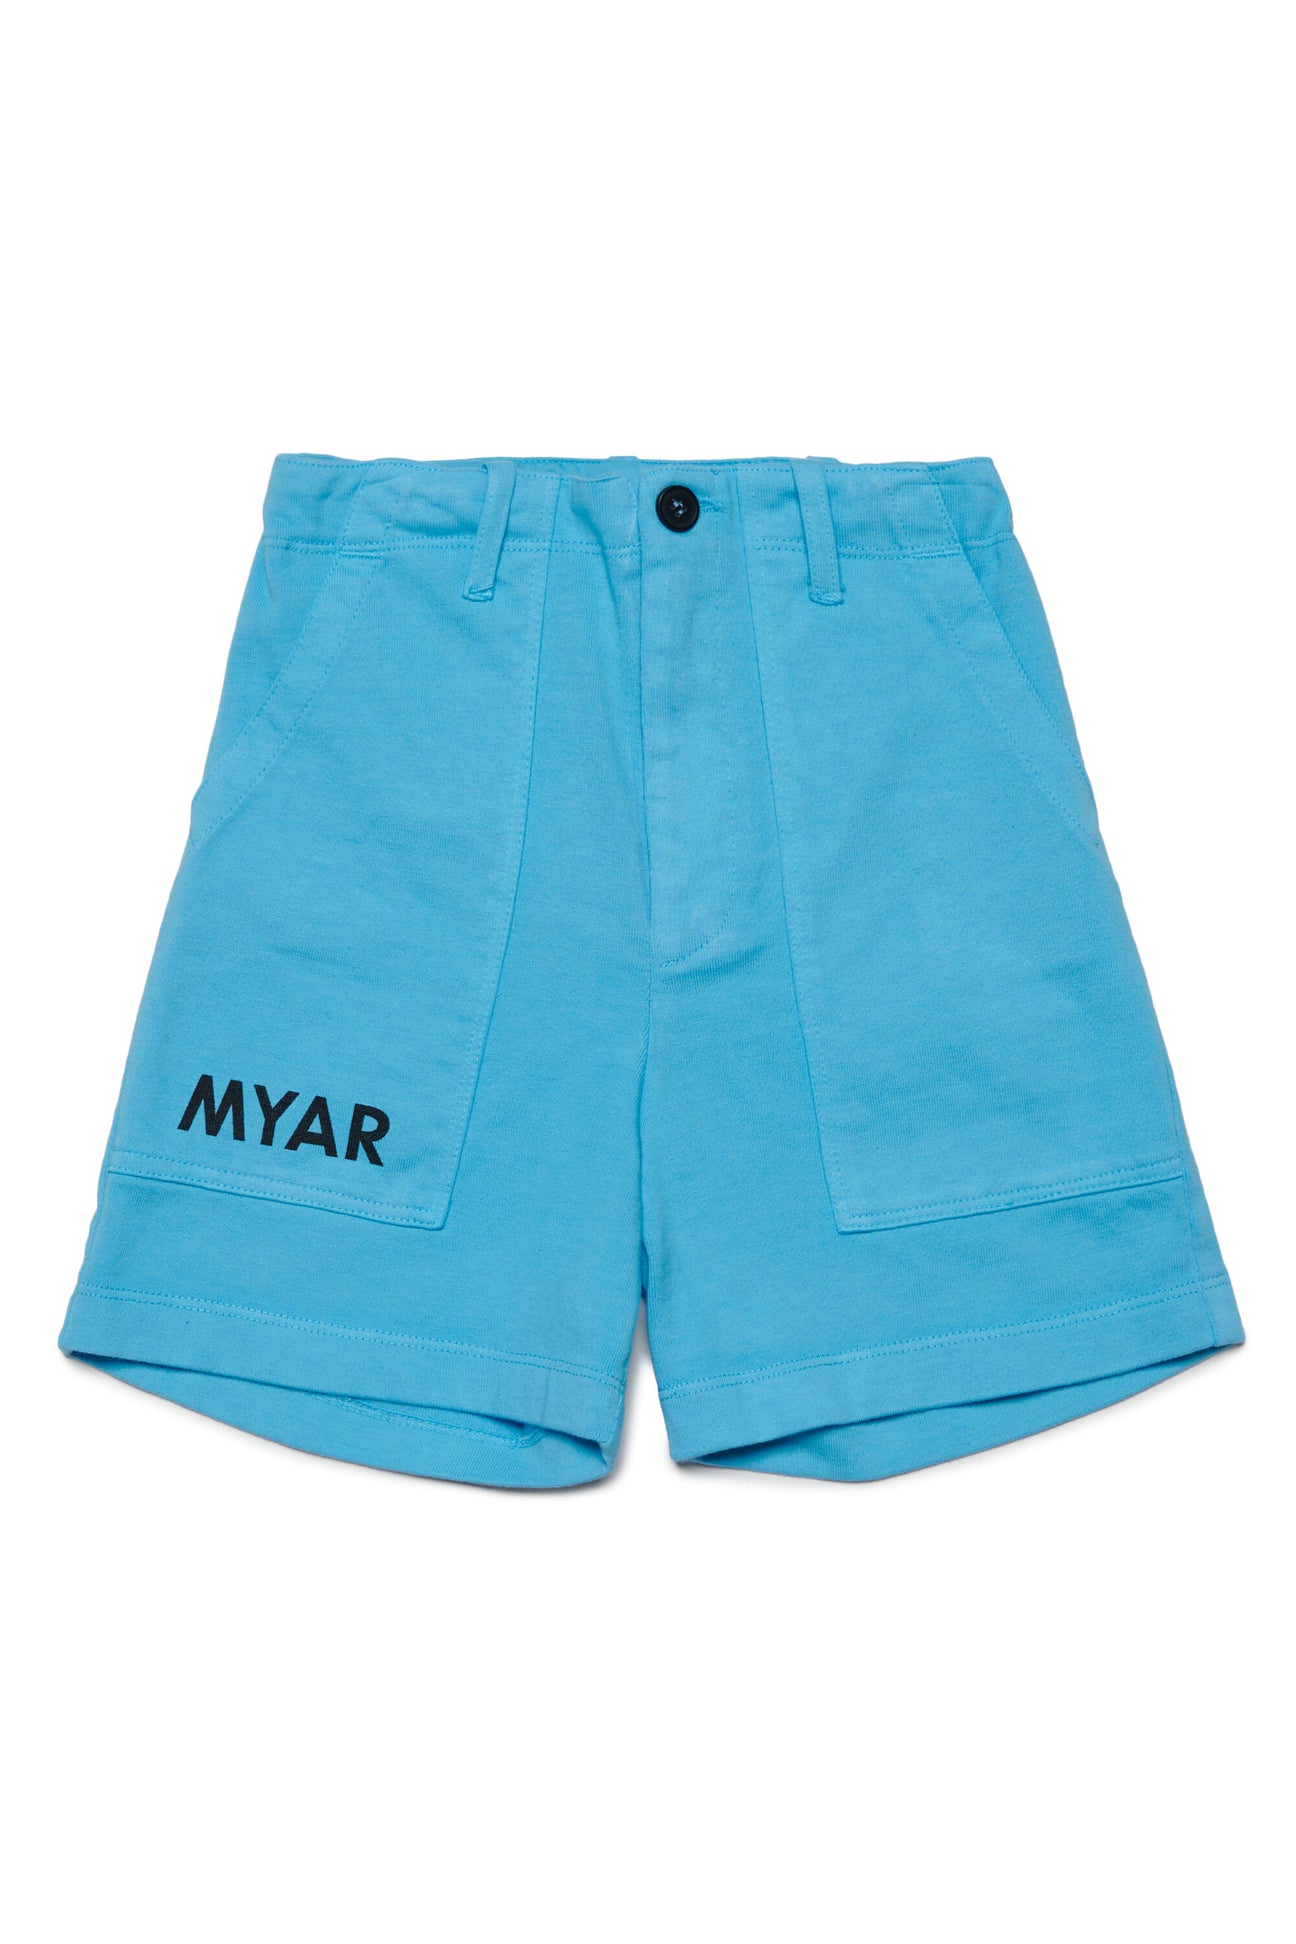 Pantalones cortos utility con logotipo MYAR Pantalones cortos utility con logotipo MYAR